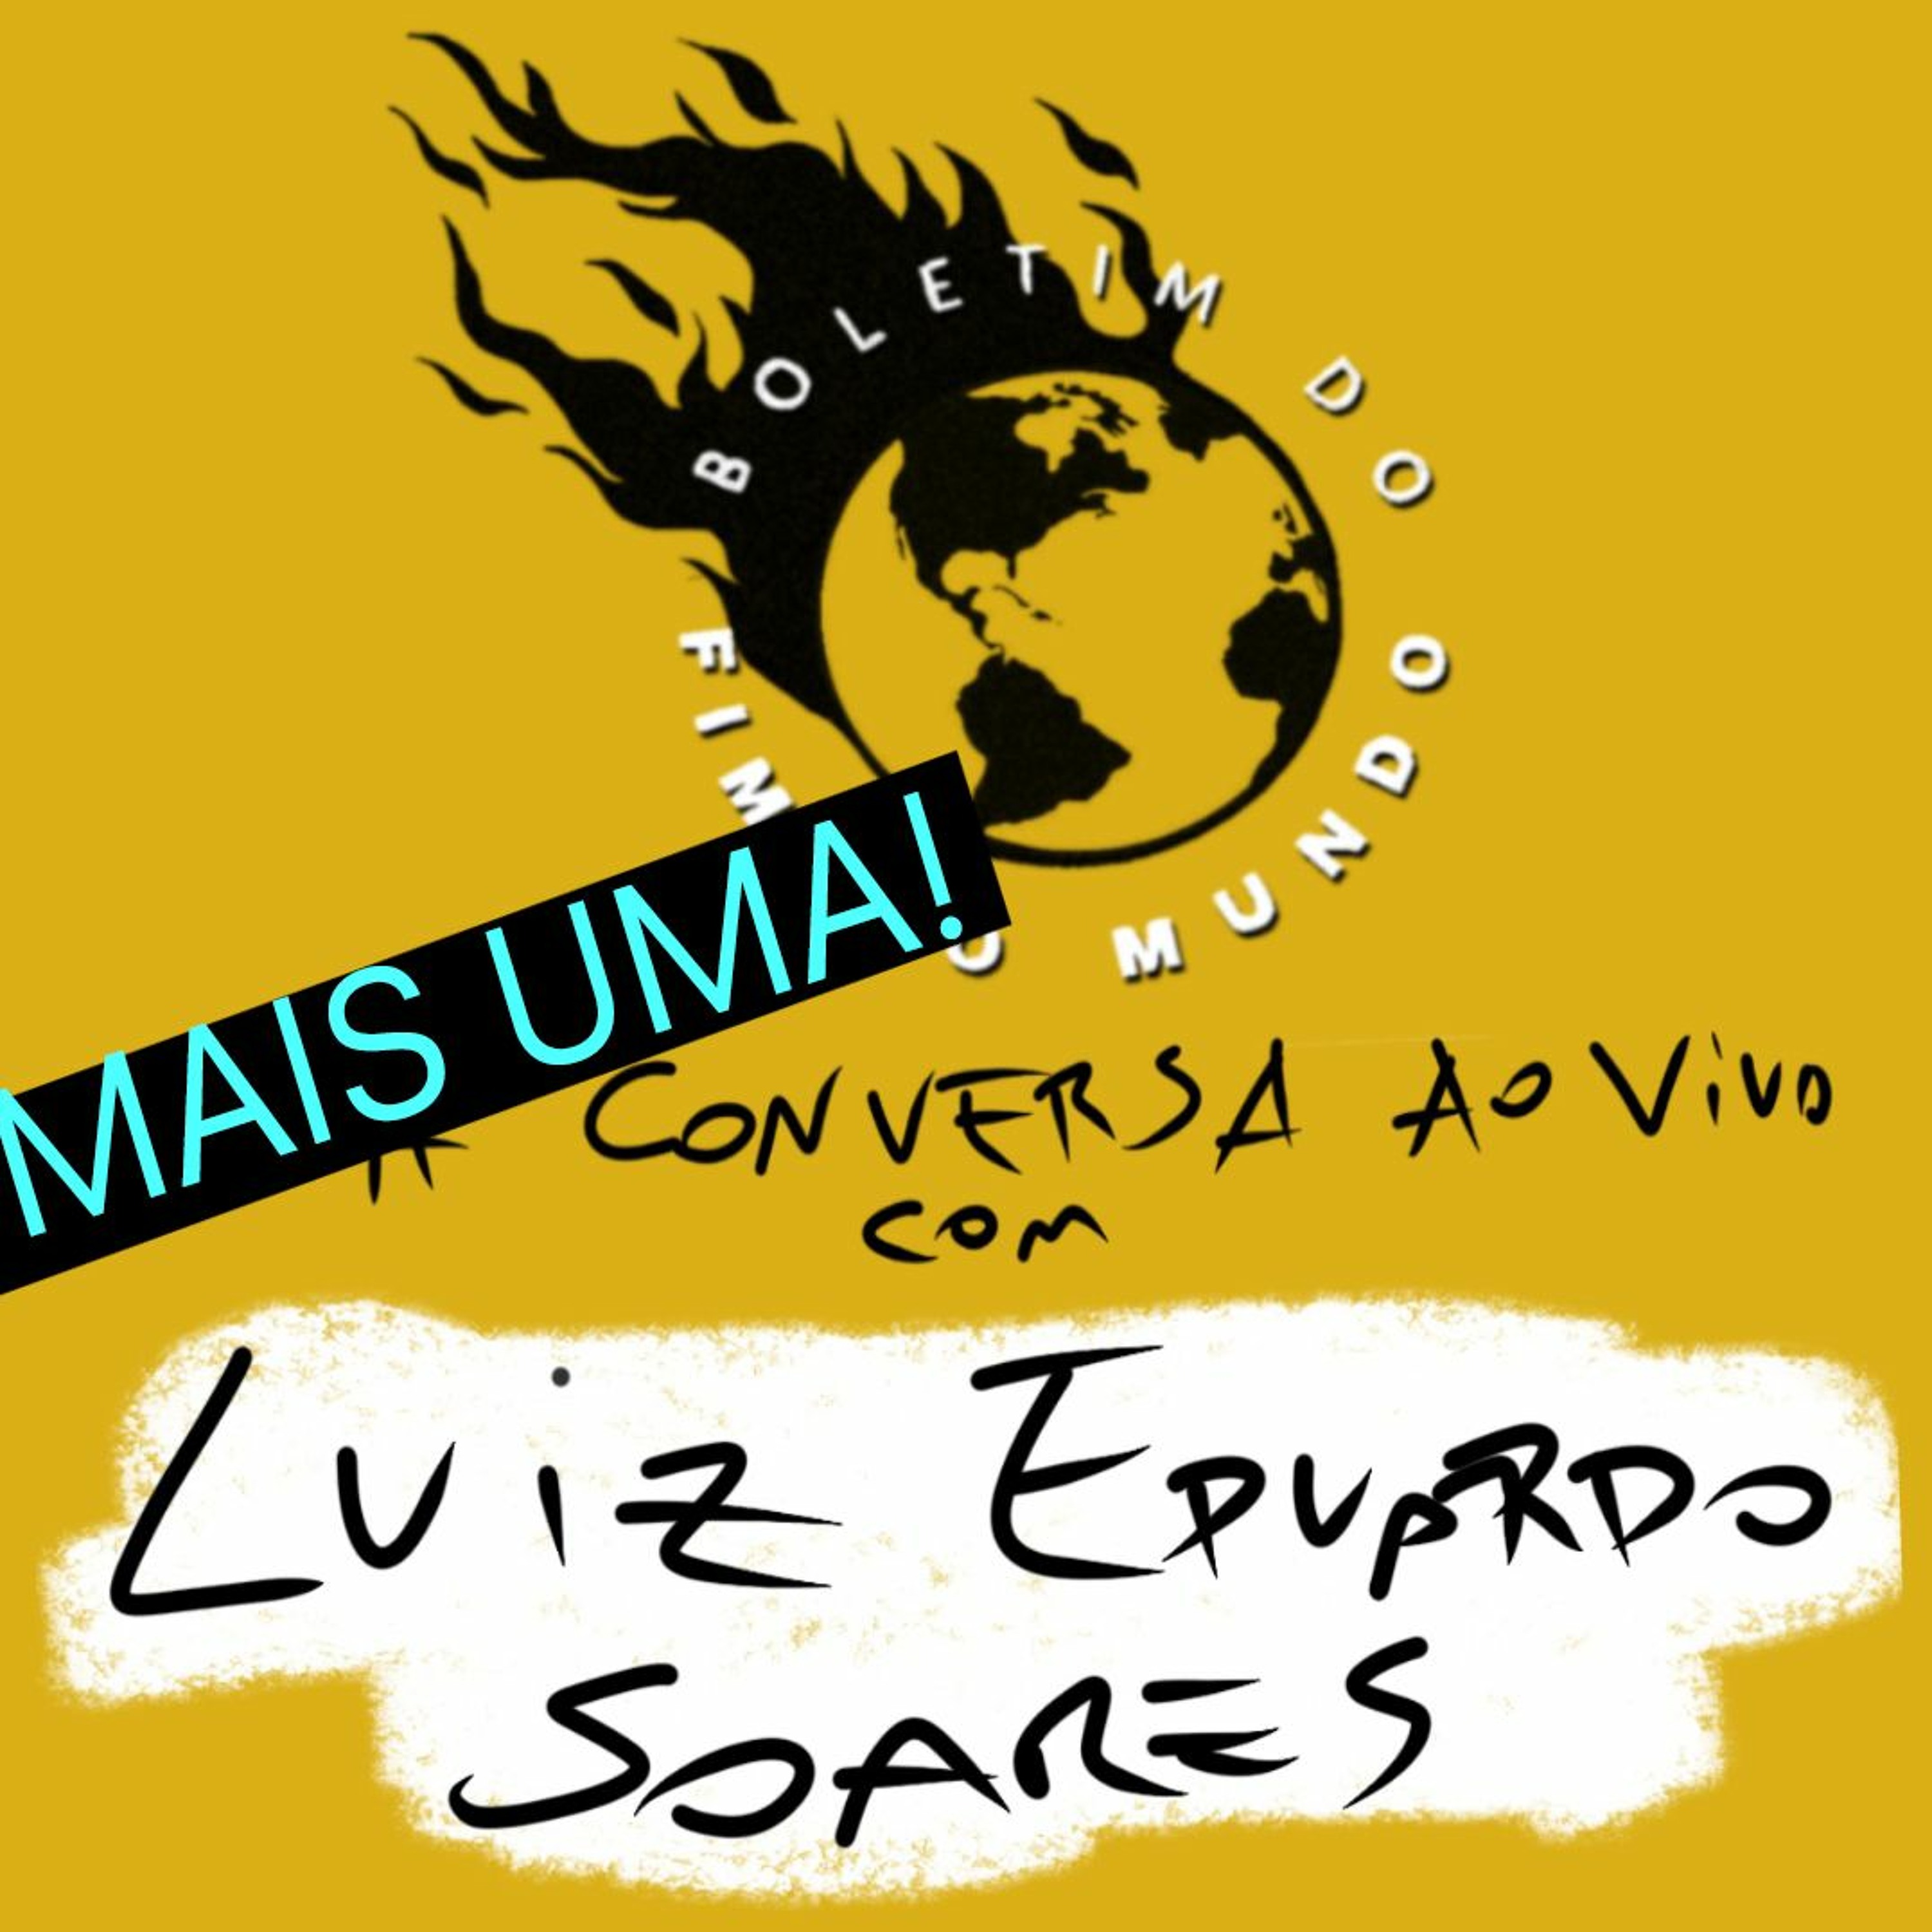 BFM - 26/6 - mais uma visita de Luiz Eduardo Soares